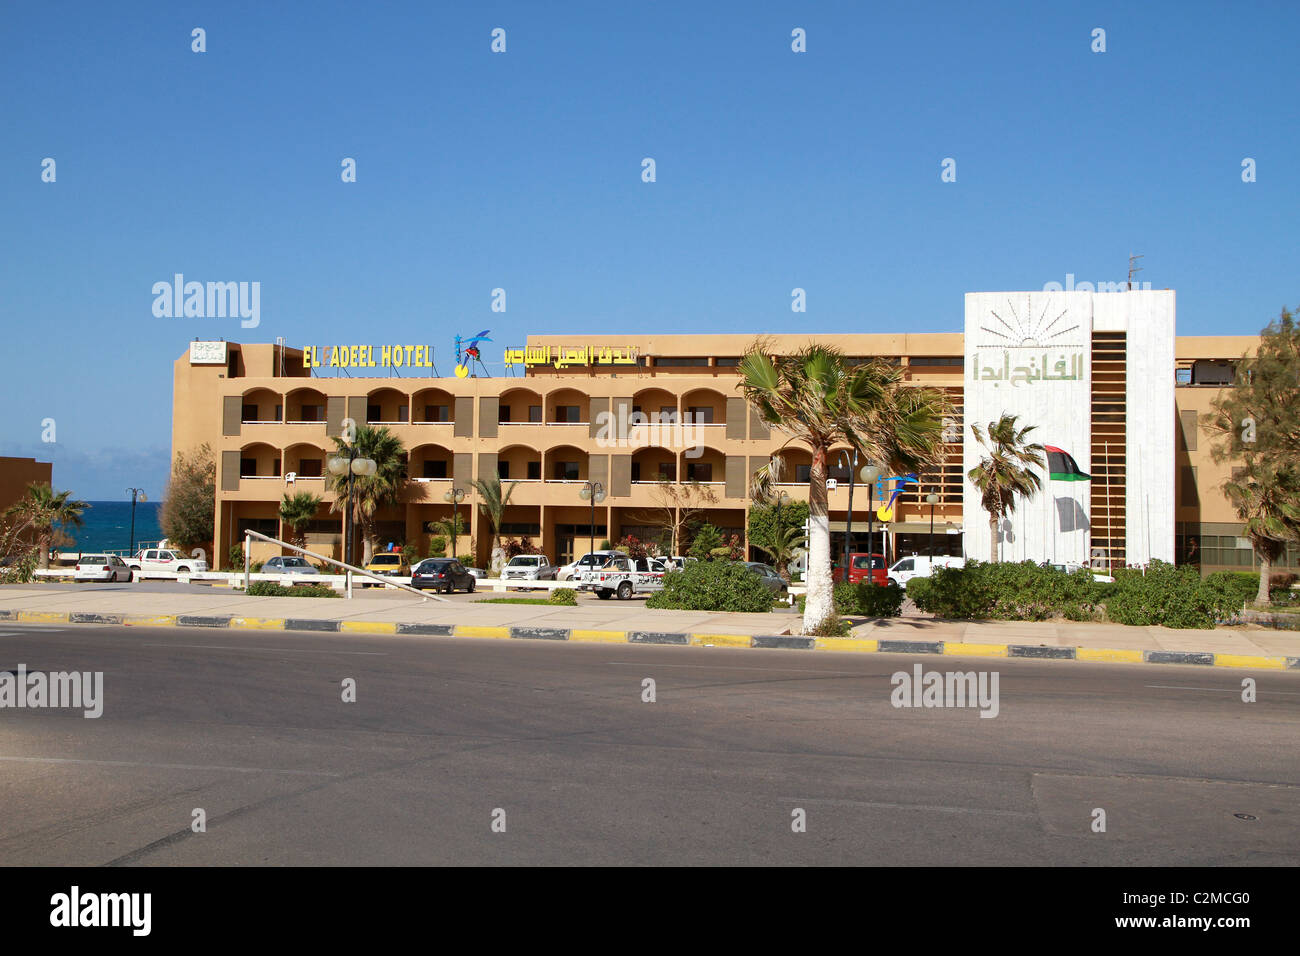 Das Hotel El Fadeel, Raz Lanuf, Libyen, Nordafrika Stockfoto